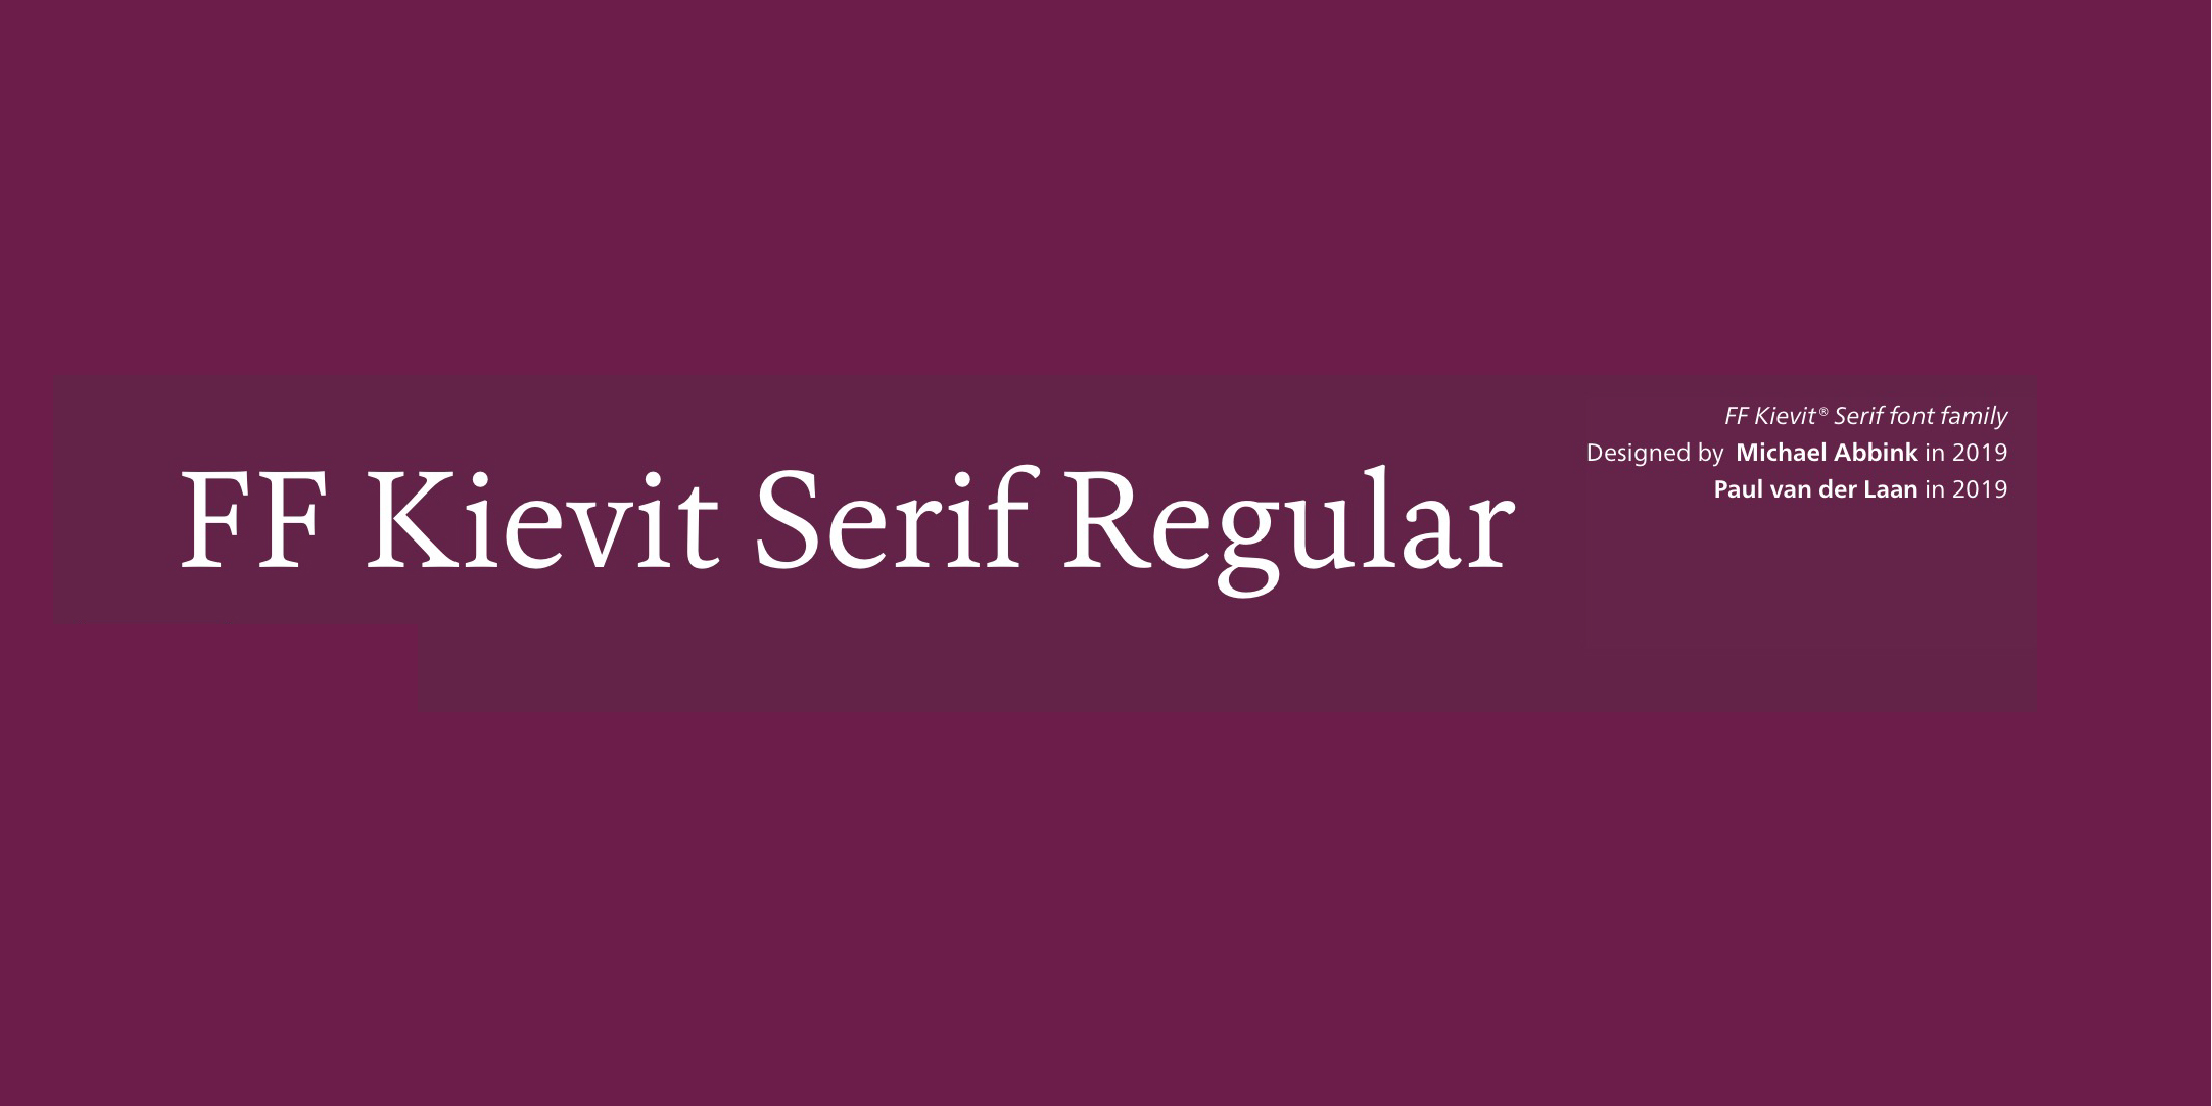 FF Kievit® Serif